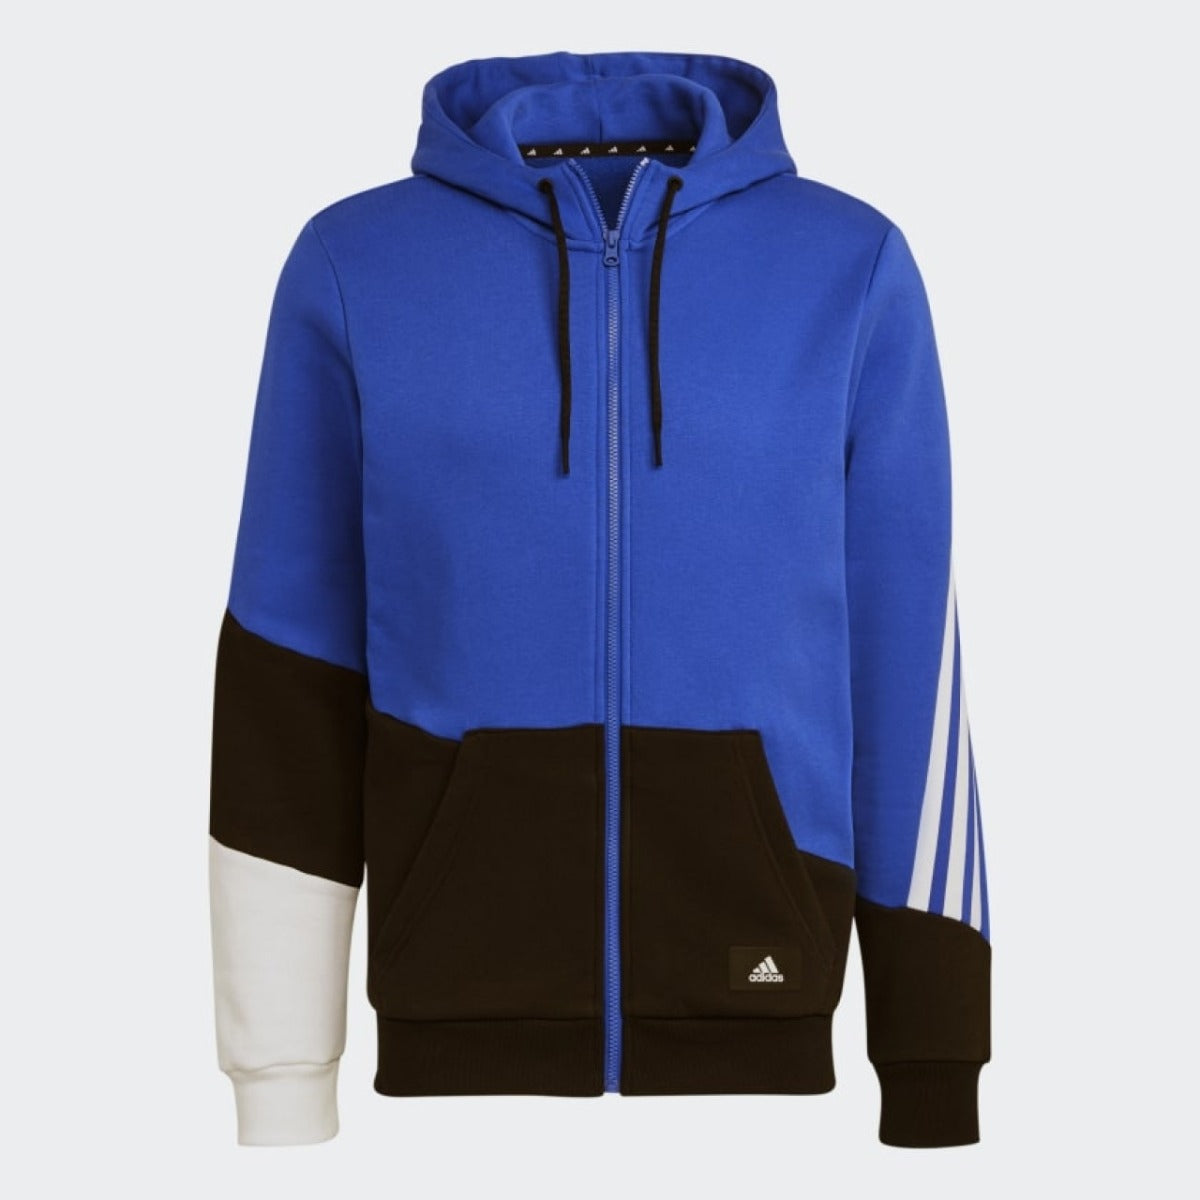 Veste Capuche Adidas Sportswear Colorblock - Bleu/Noir